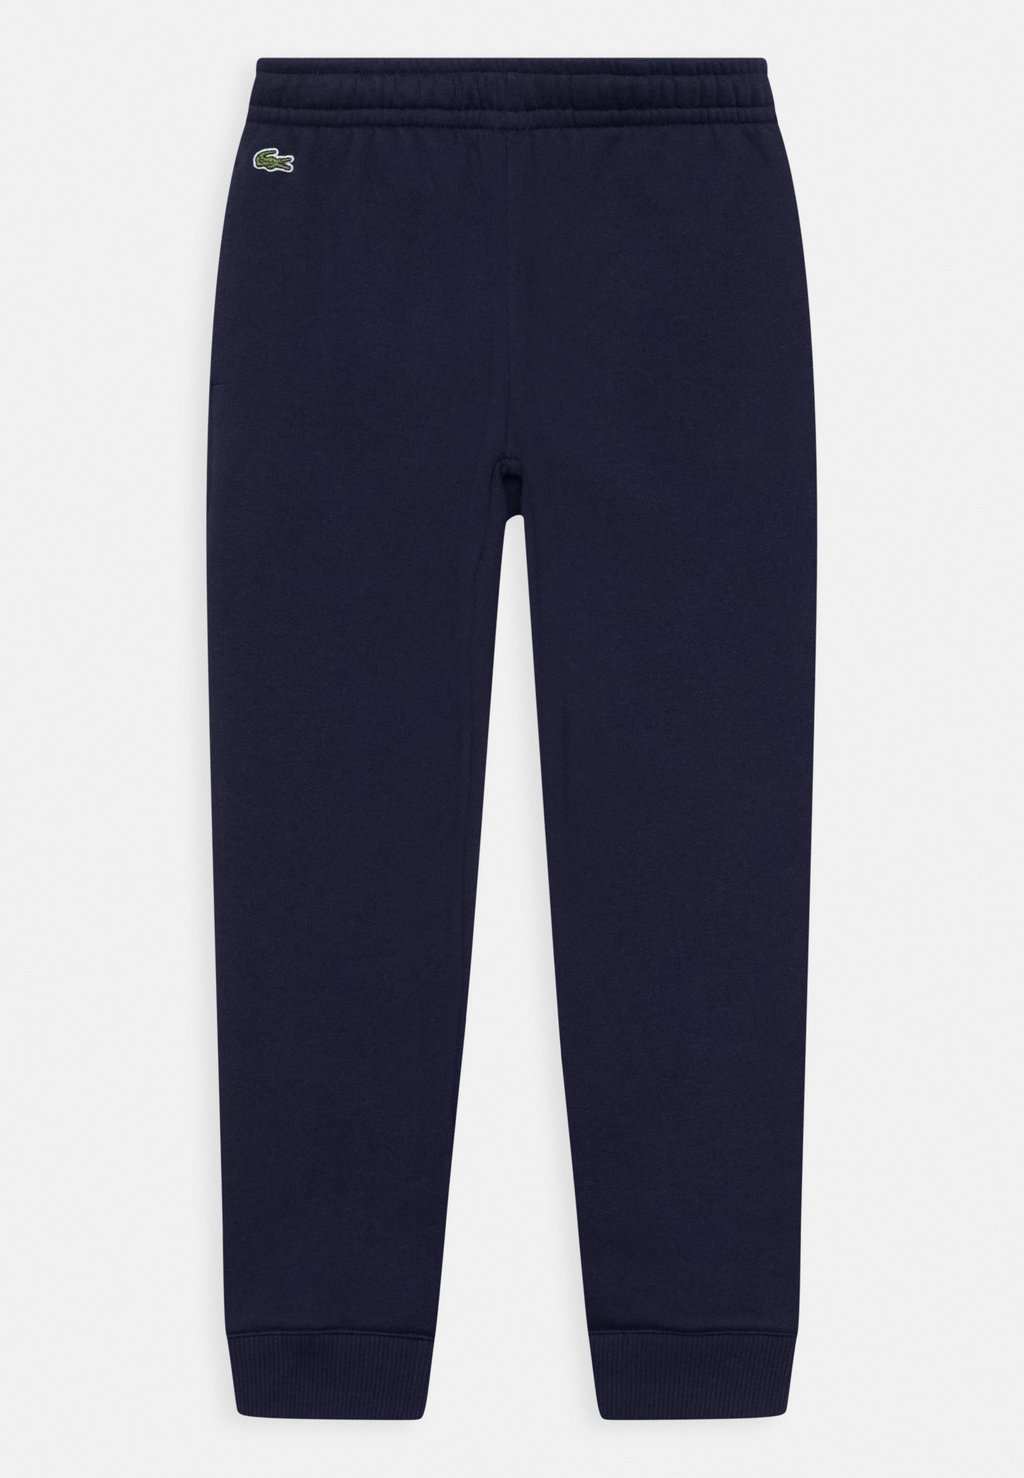 Спортивные брюки Unisex Lacoste, цвет navy blue спортивные брюки tennis pant lacoste цвет sinople navy blue